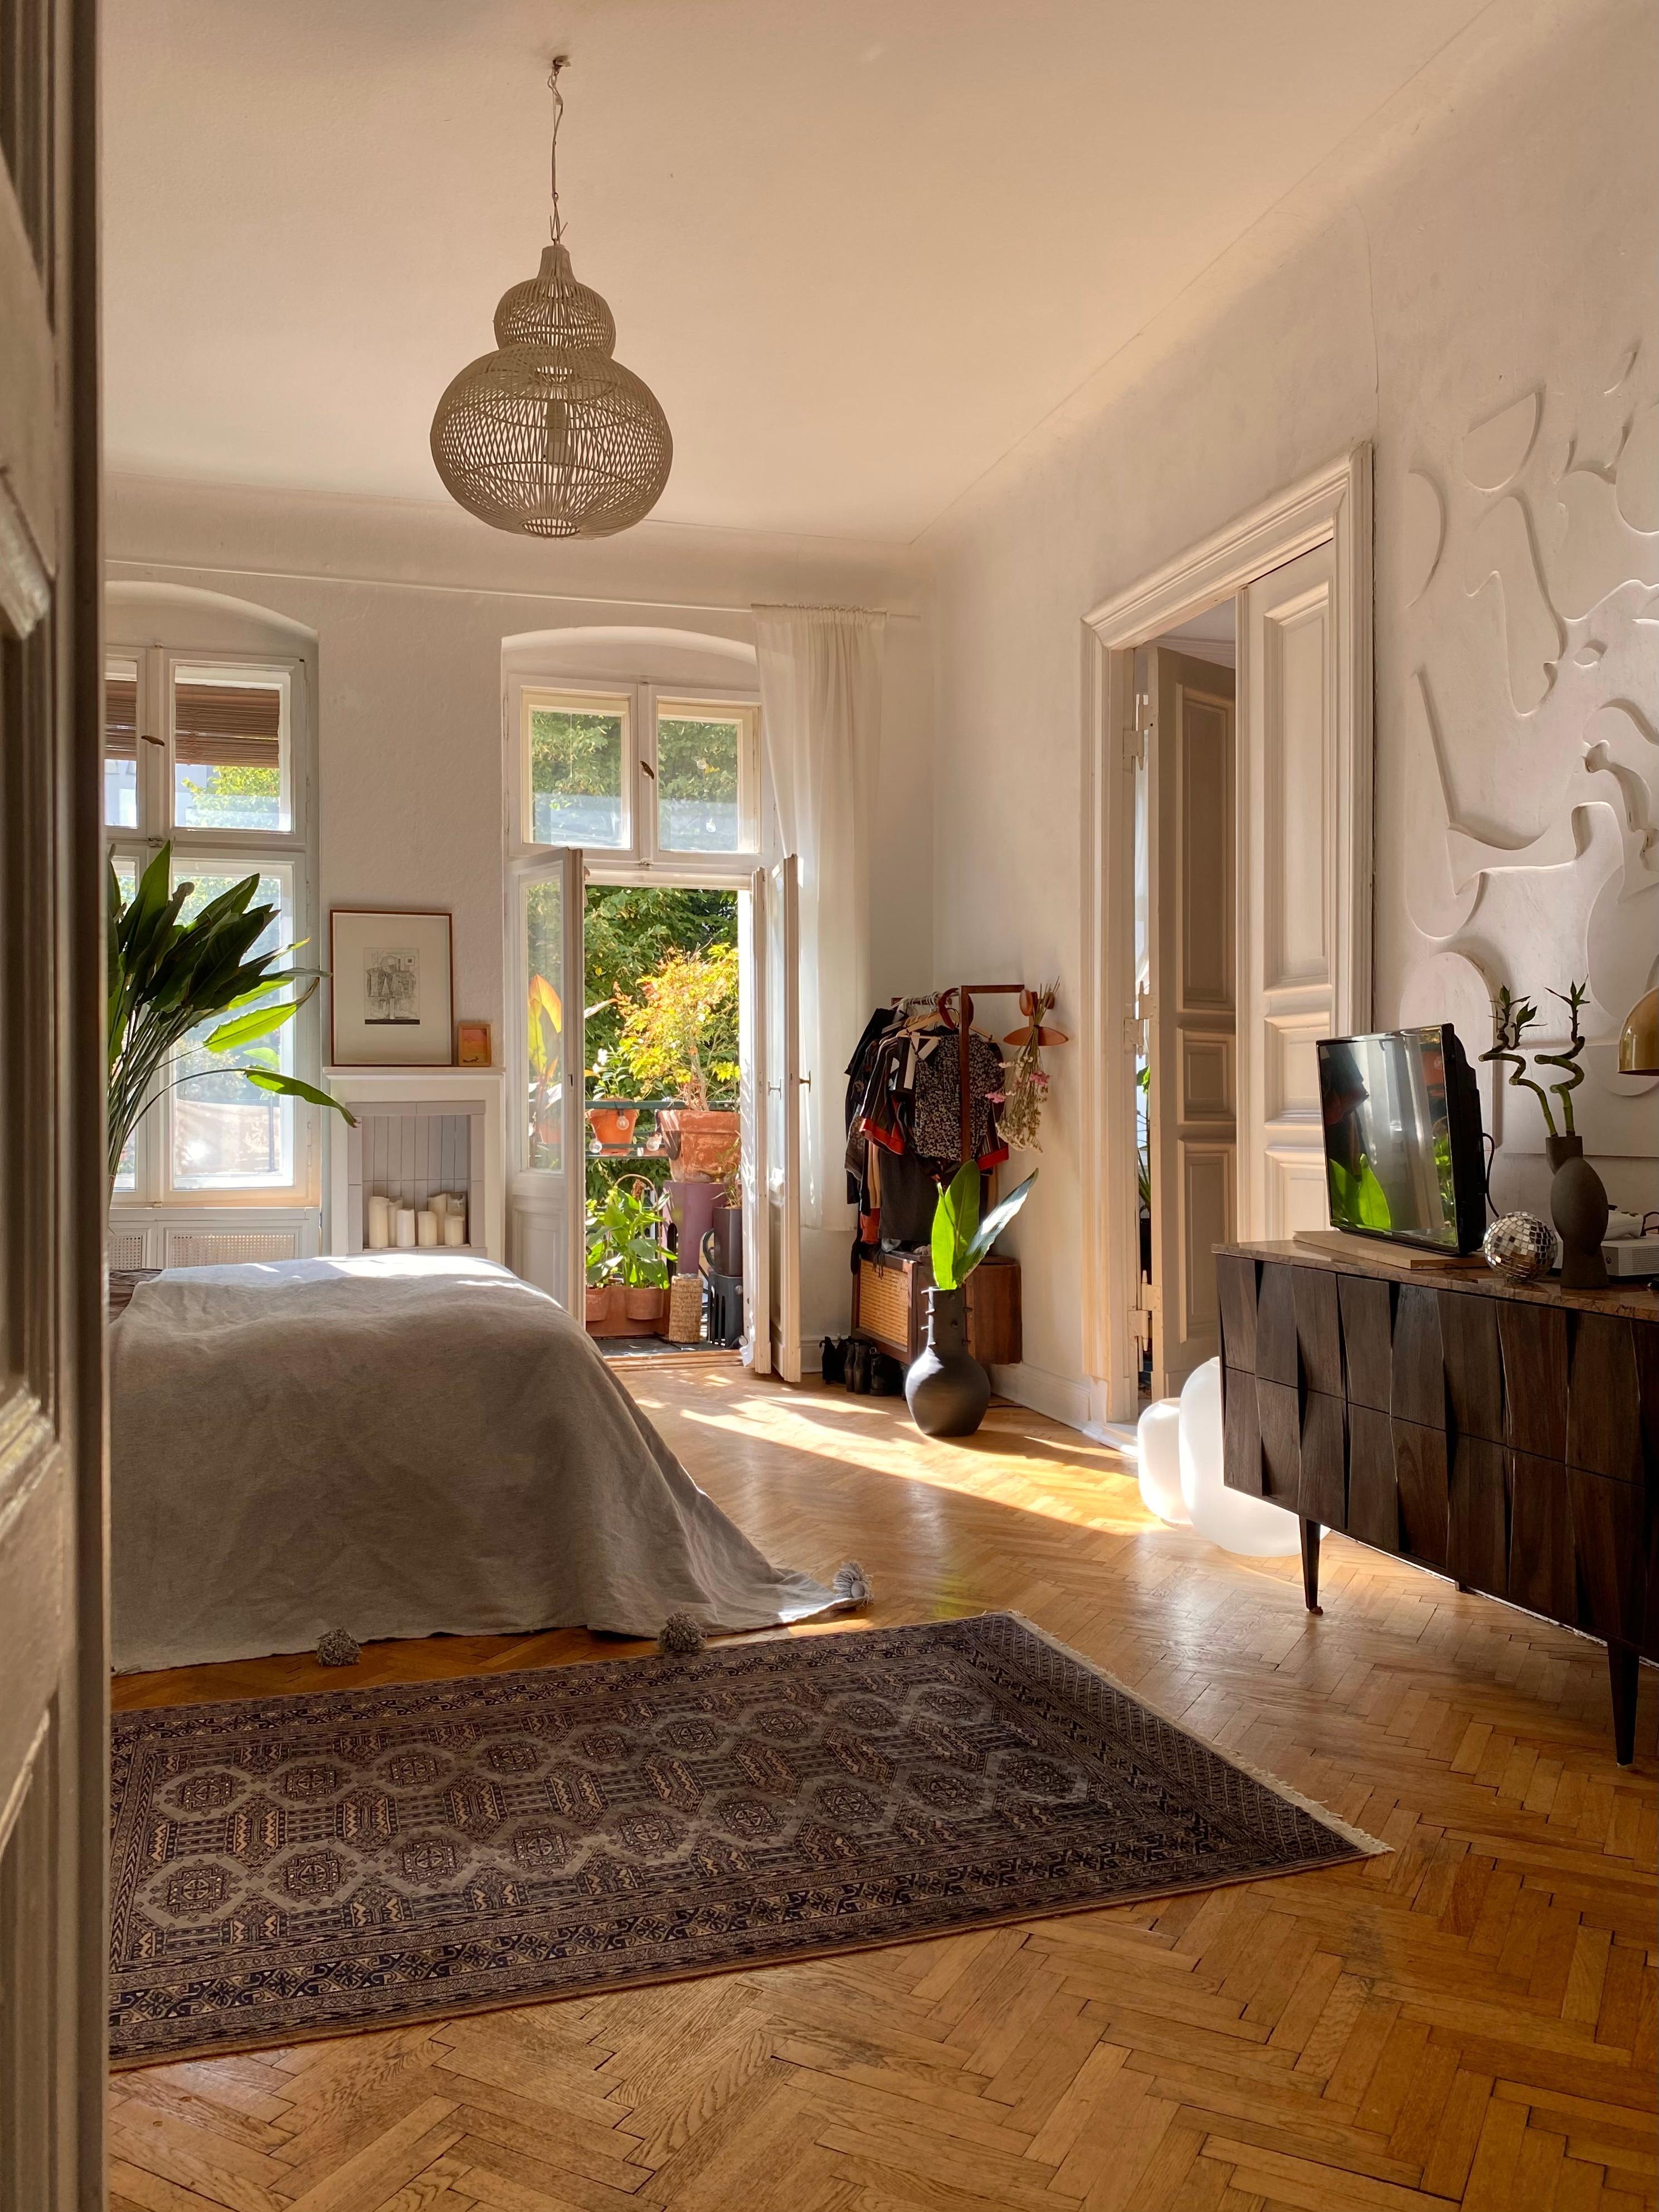 ☀️♥️ #altbau #schlafzimmer #bedroom #teppich #kommode #garderobe #kunst